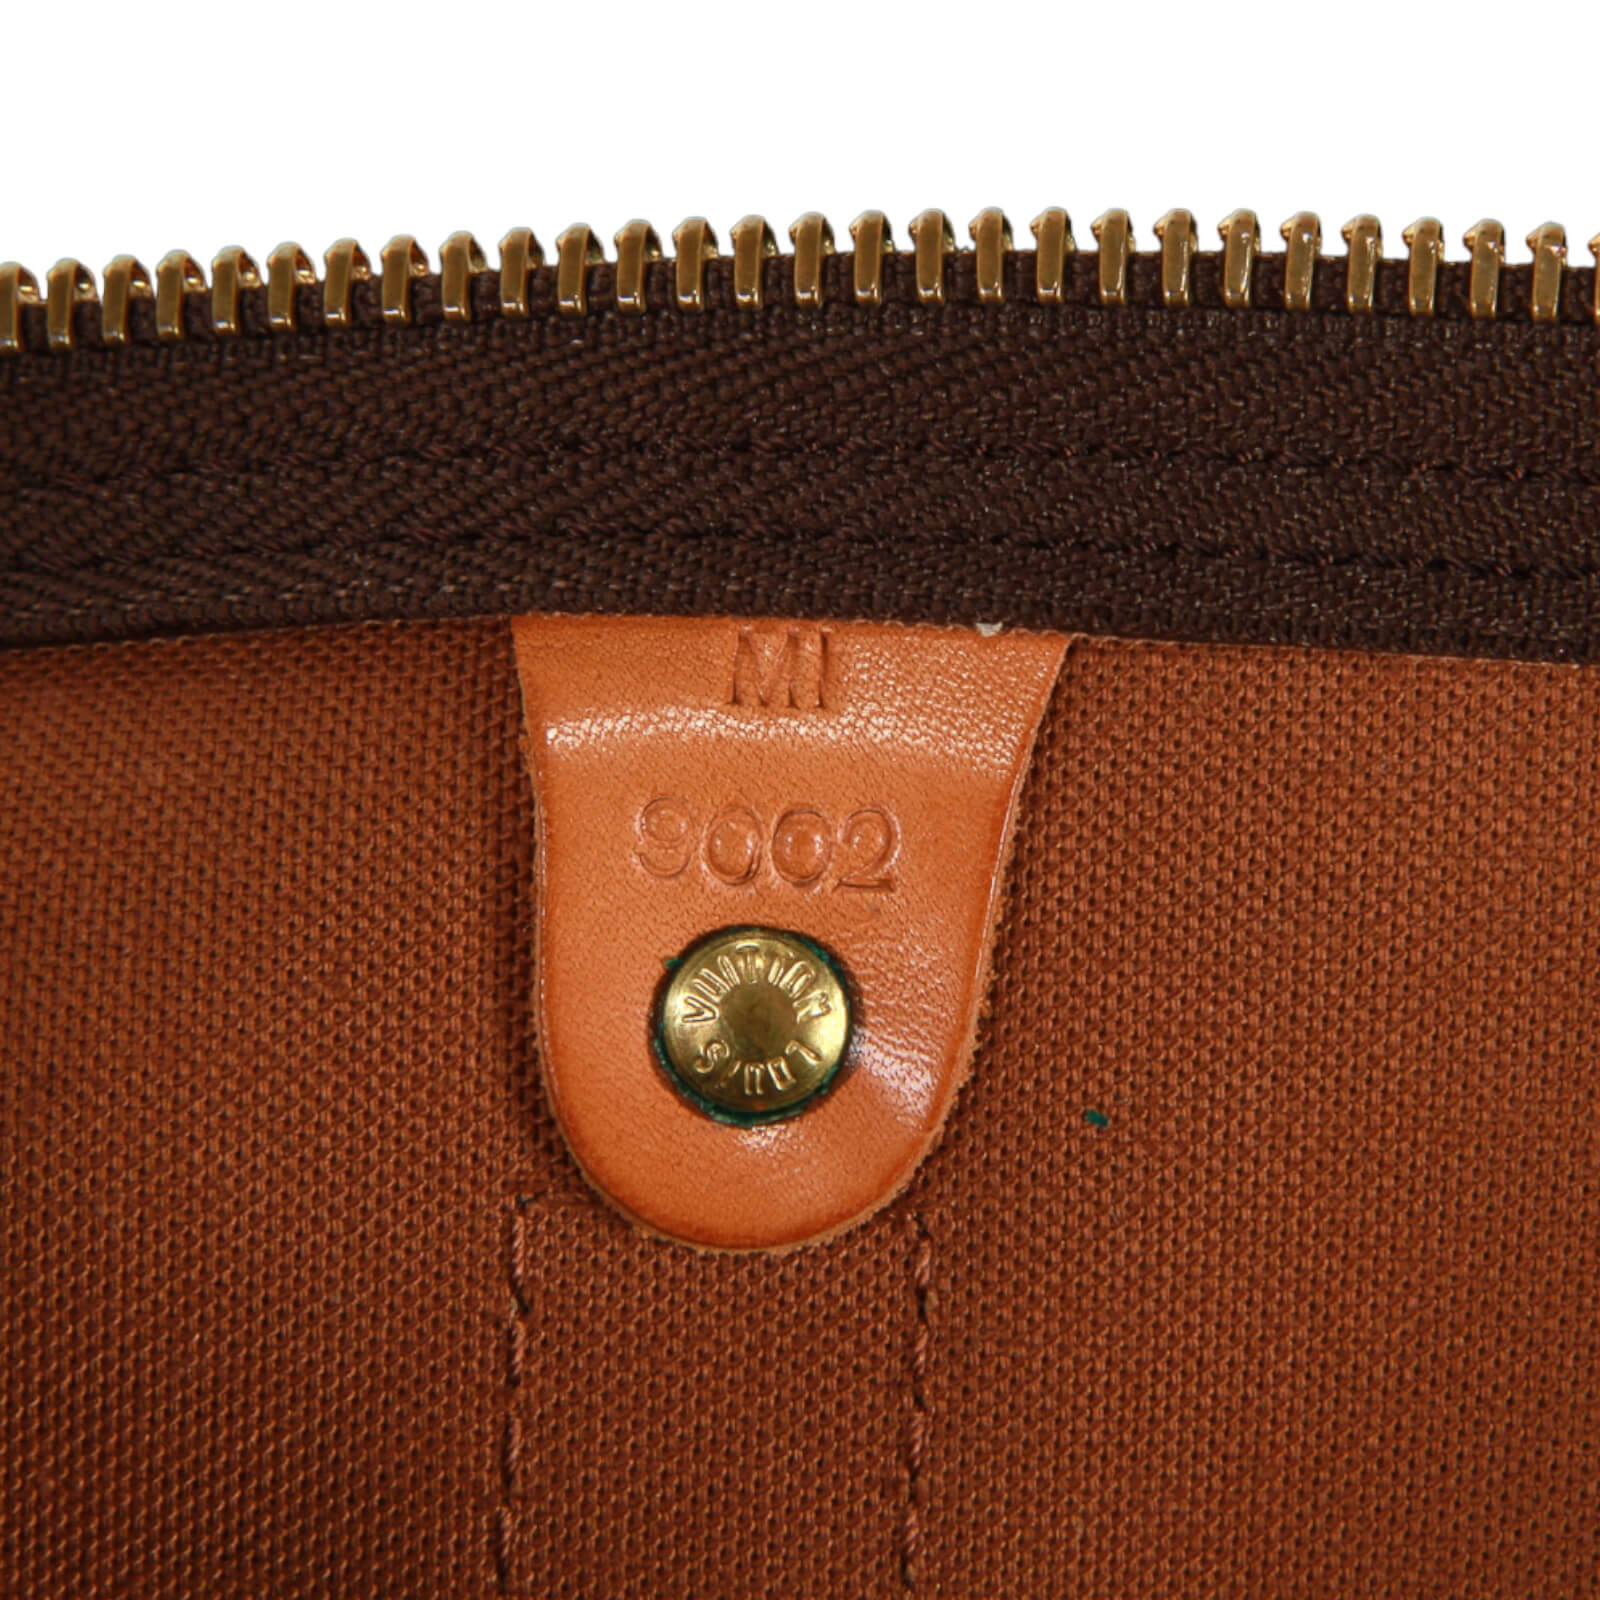 Louis Vuitton, Bags, Authentic Louis Vuitton Date Codes